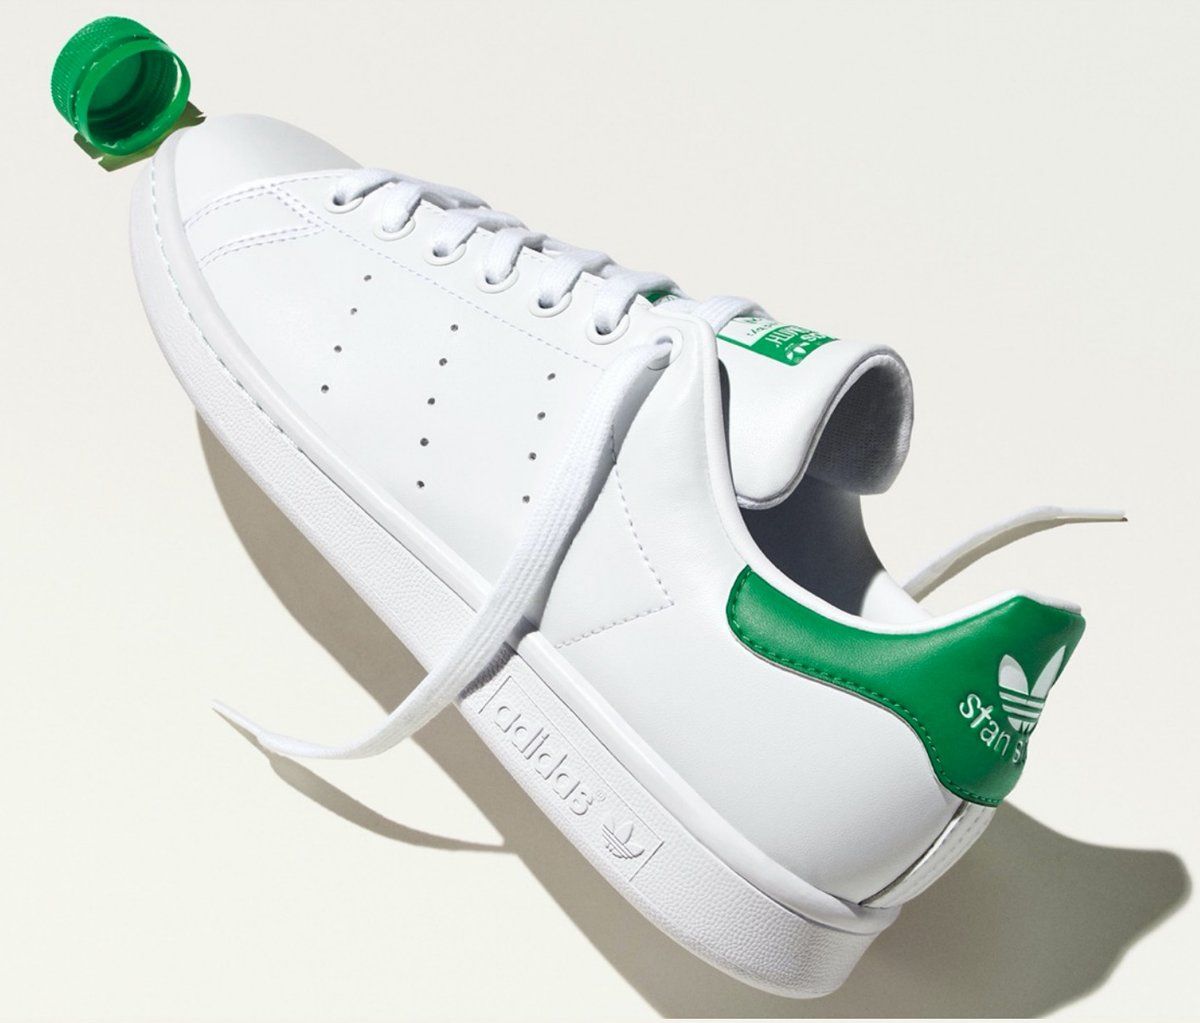 Konec plastovému odpadu. Footshop, adidas a Reebok nabízí alternativu fast-fashion